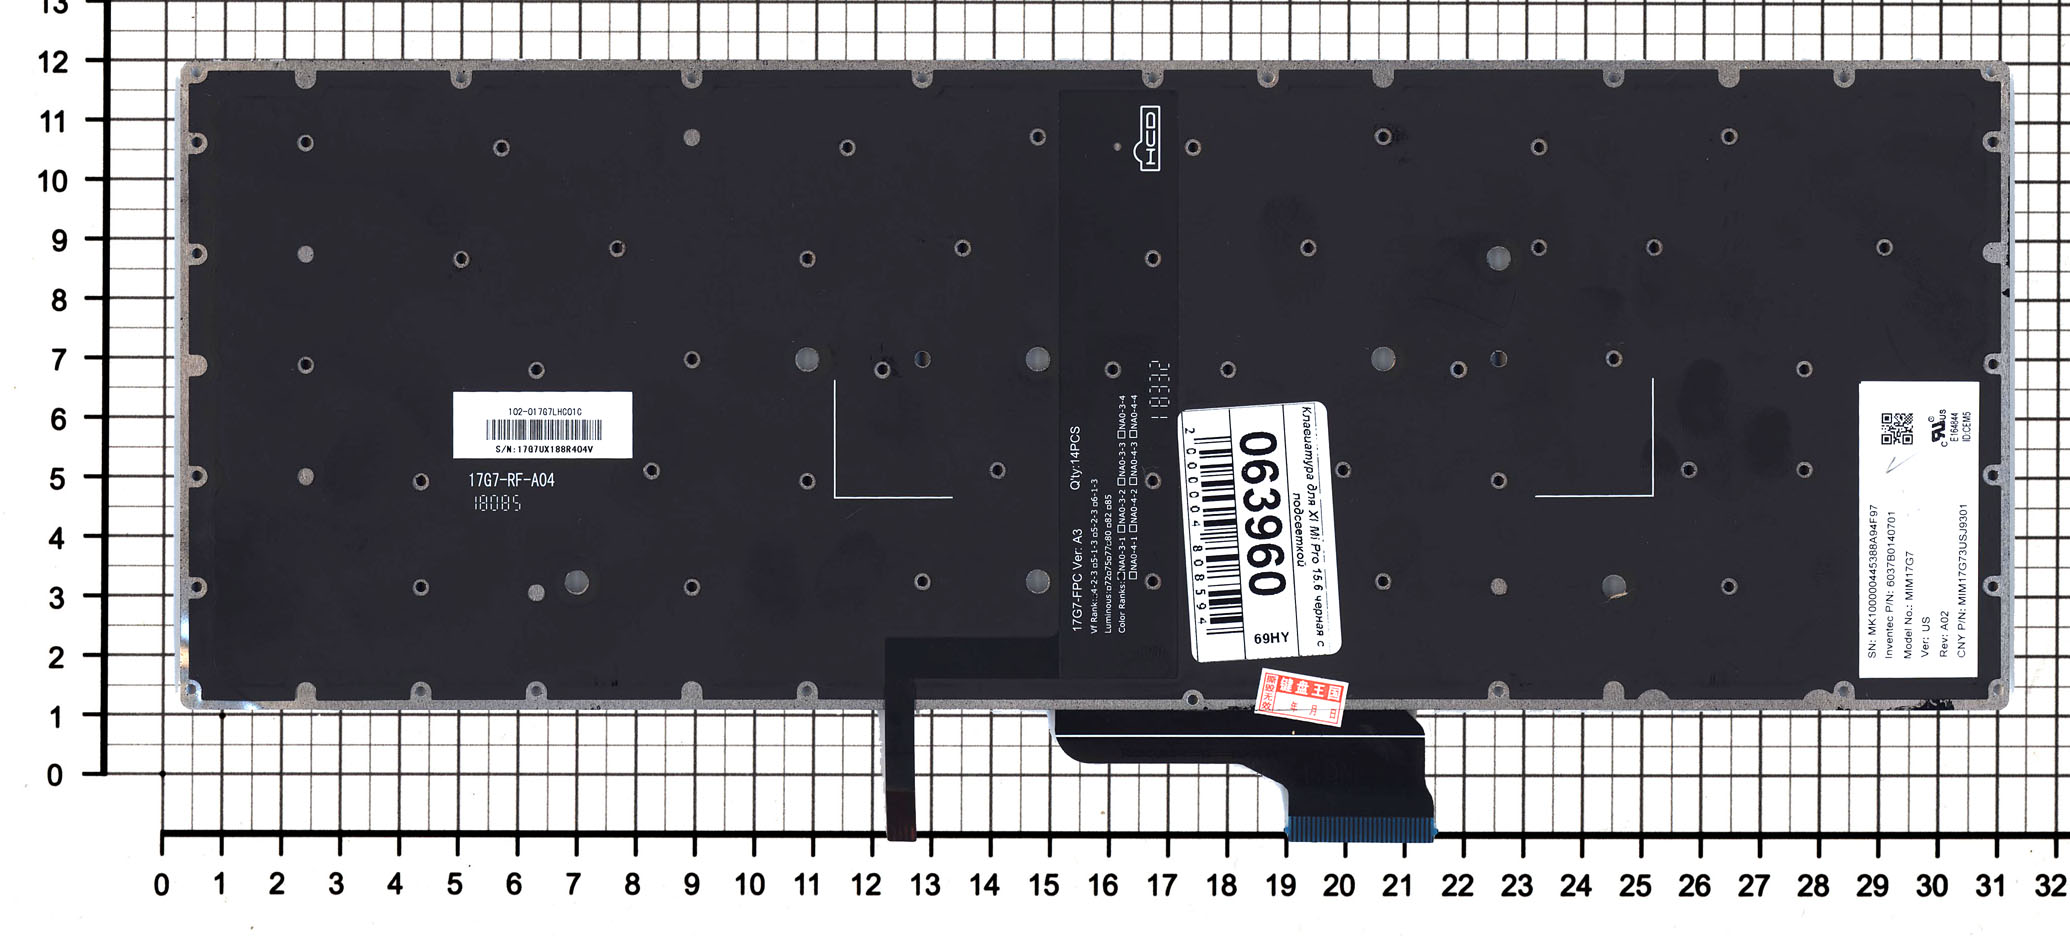 Купить клавиатура для ноутбука Xiaomi Mi Pro 15.6 черная с подсветкой